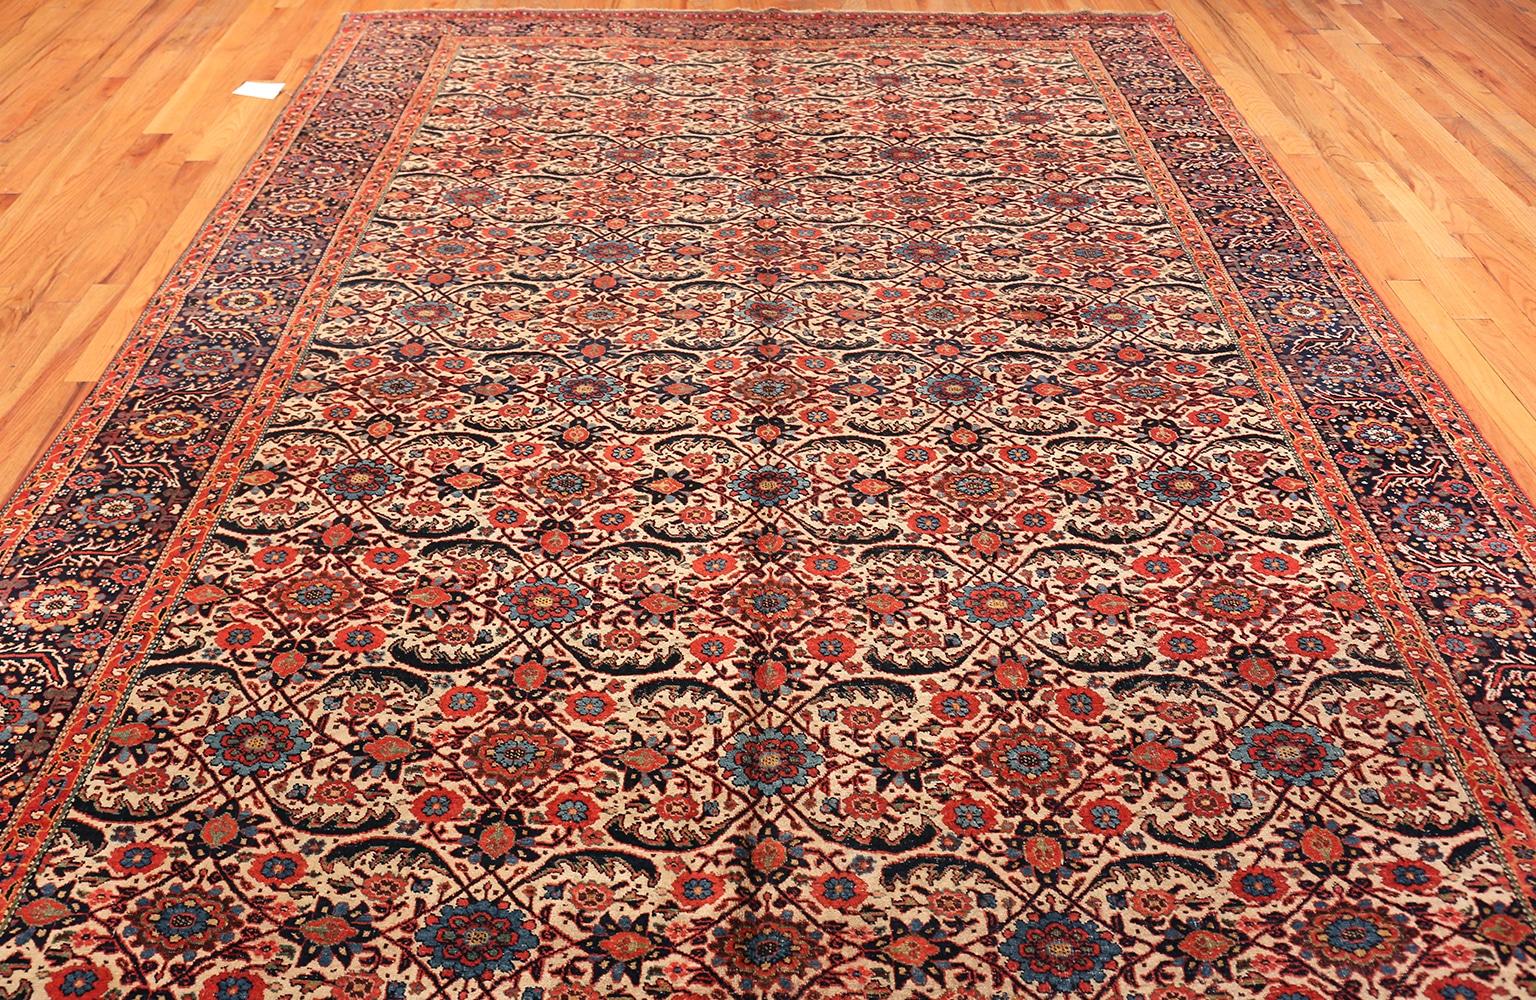 Magnifique tapis persan ancien Bidjar de taille galerie, Pays d'origine / Type de tapis : Tapis persans anciens, Circa Date : 1900 - Ce magnifique tapis de Bidjar de taille galerie est impressionnant par sa taille et un motif spectaculaire sur toute